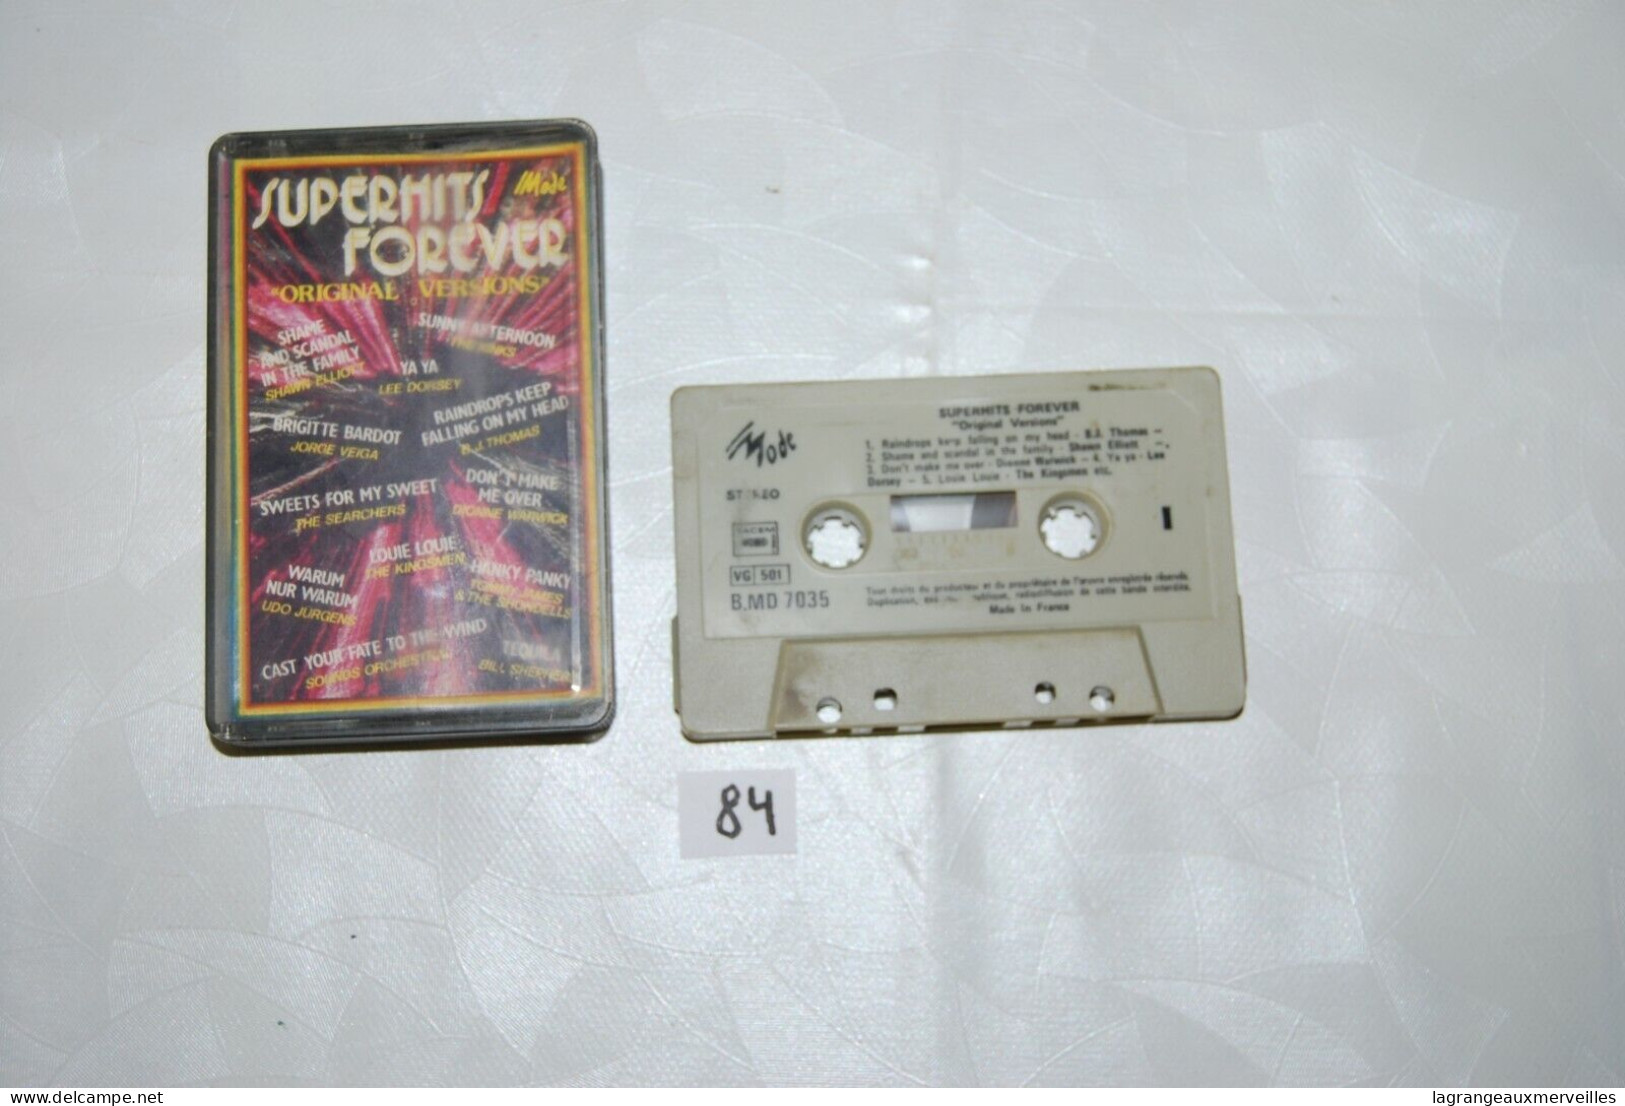 C84 K7 Cassette Audio - Super Hits Forever - Beta-Tapes